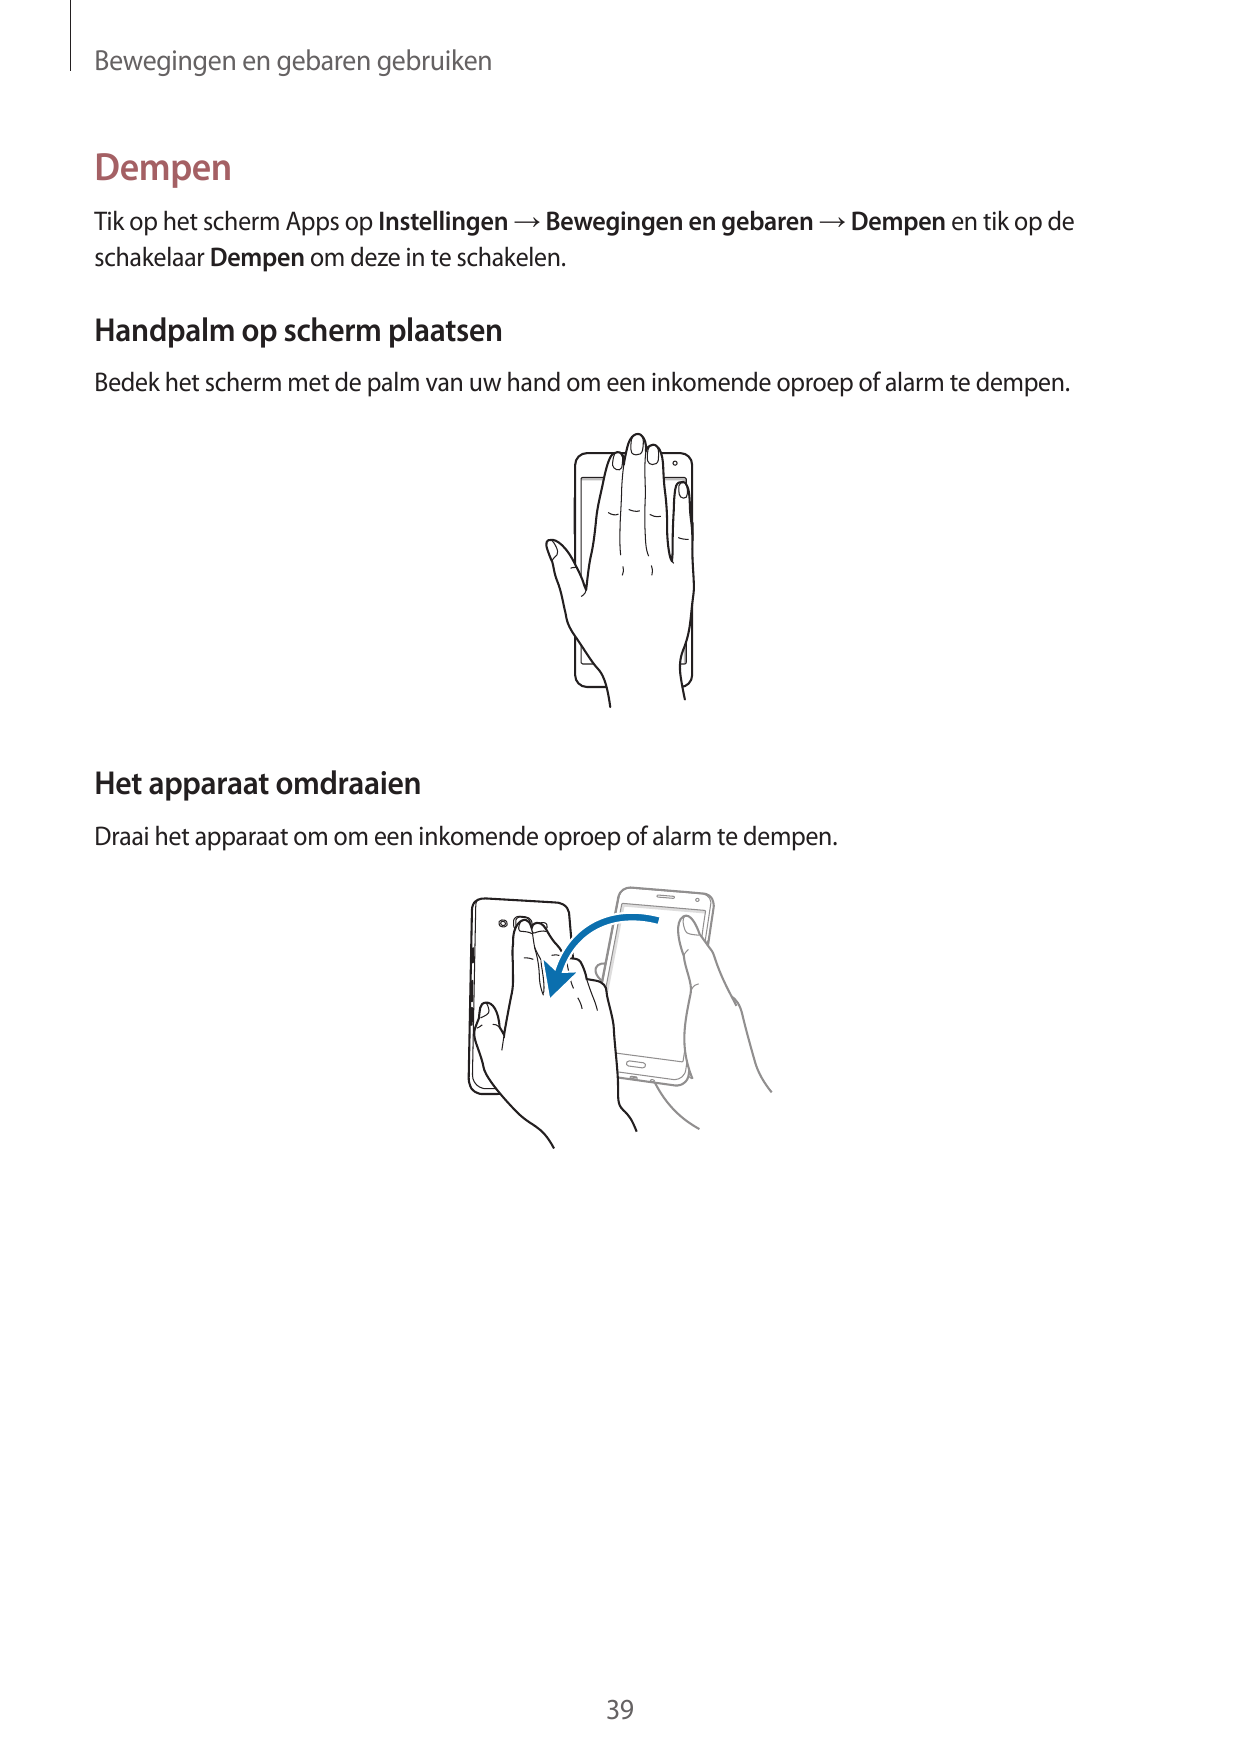 Bewegingen en gebaren gebruikenDempenTik op het scherm Apps op Instellingen → Bewegingen en gebaren → Dempen en tik op deschakel